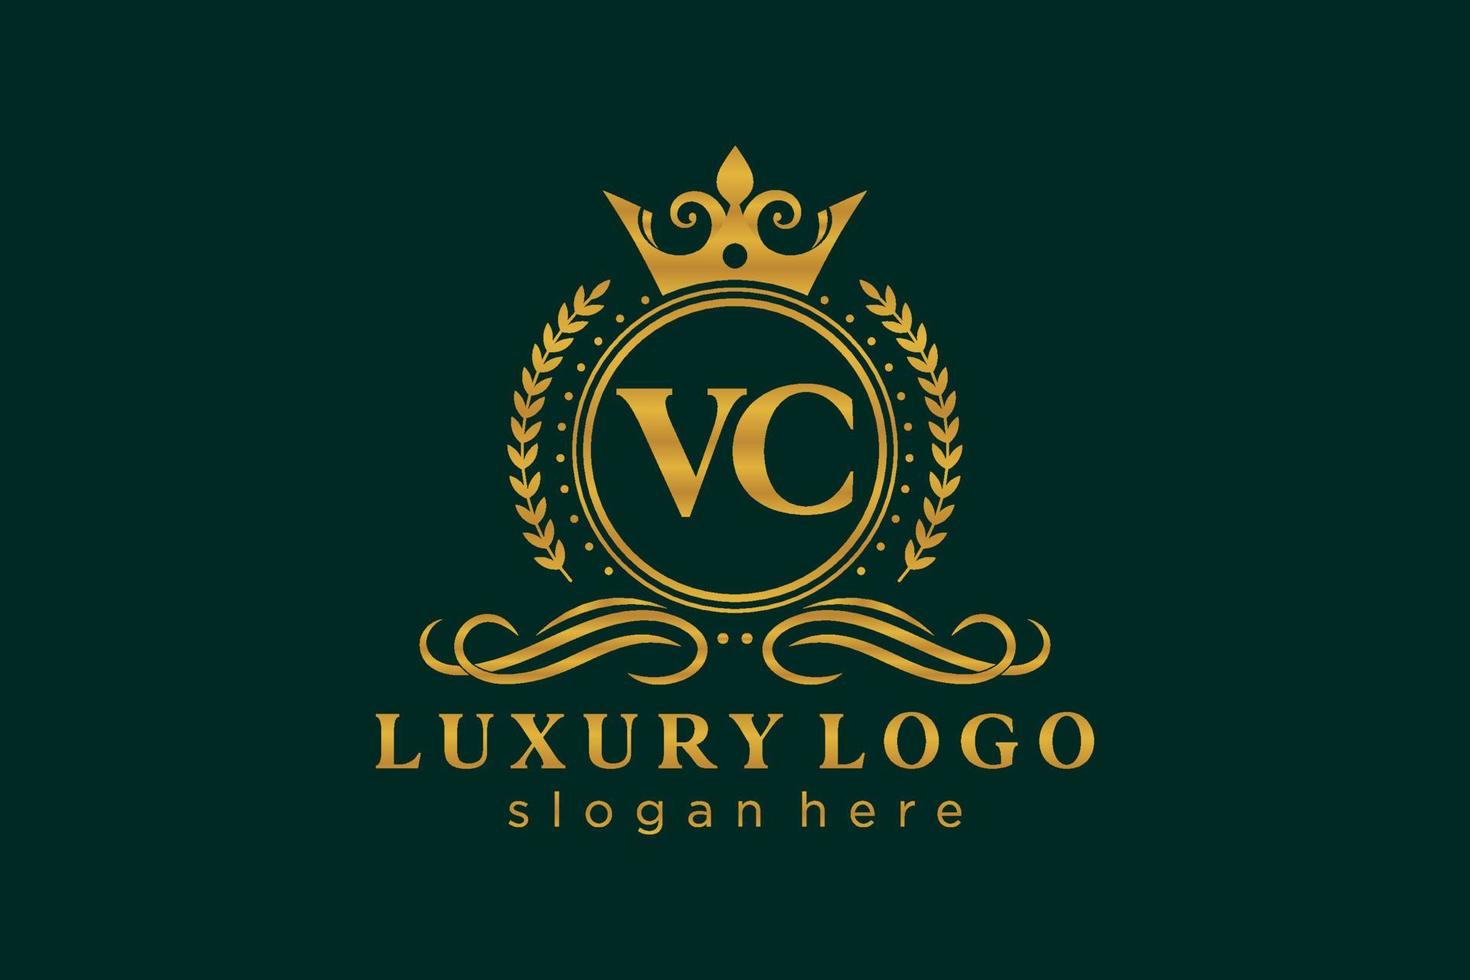 Royal Luxury Logo-Vorlage mit anfänglichem VC-Buchstaben in Vektorgrafiken für Restaurant, Lizenzgebühren, Boutique, Café, Hotel, Heraldik, Schmuck, Mode und andere Vektorillustrationen. vektor